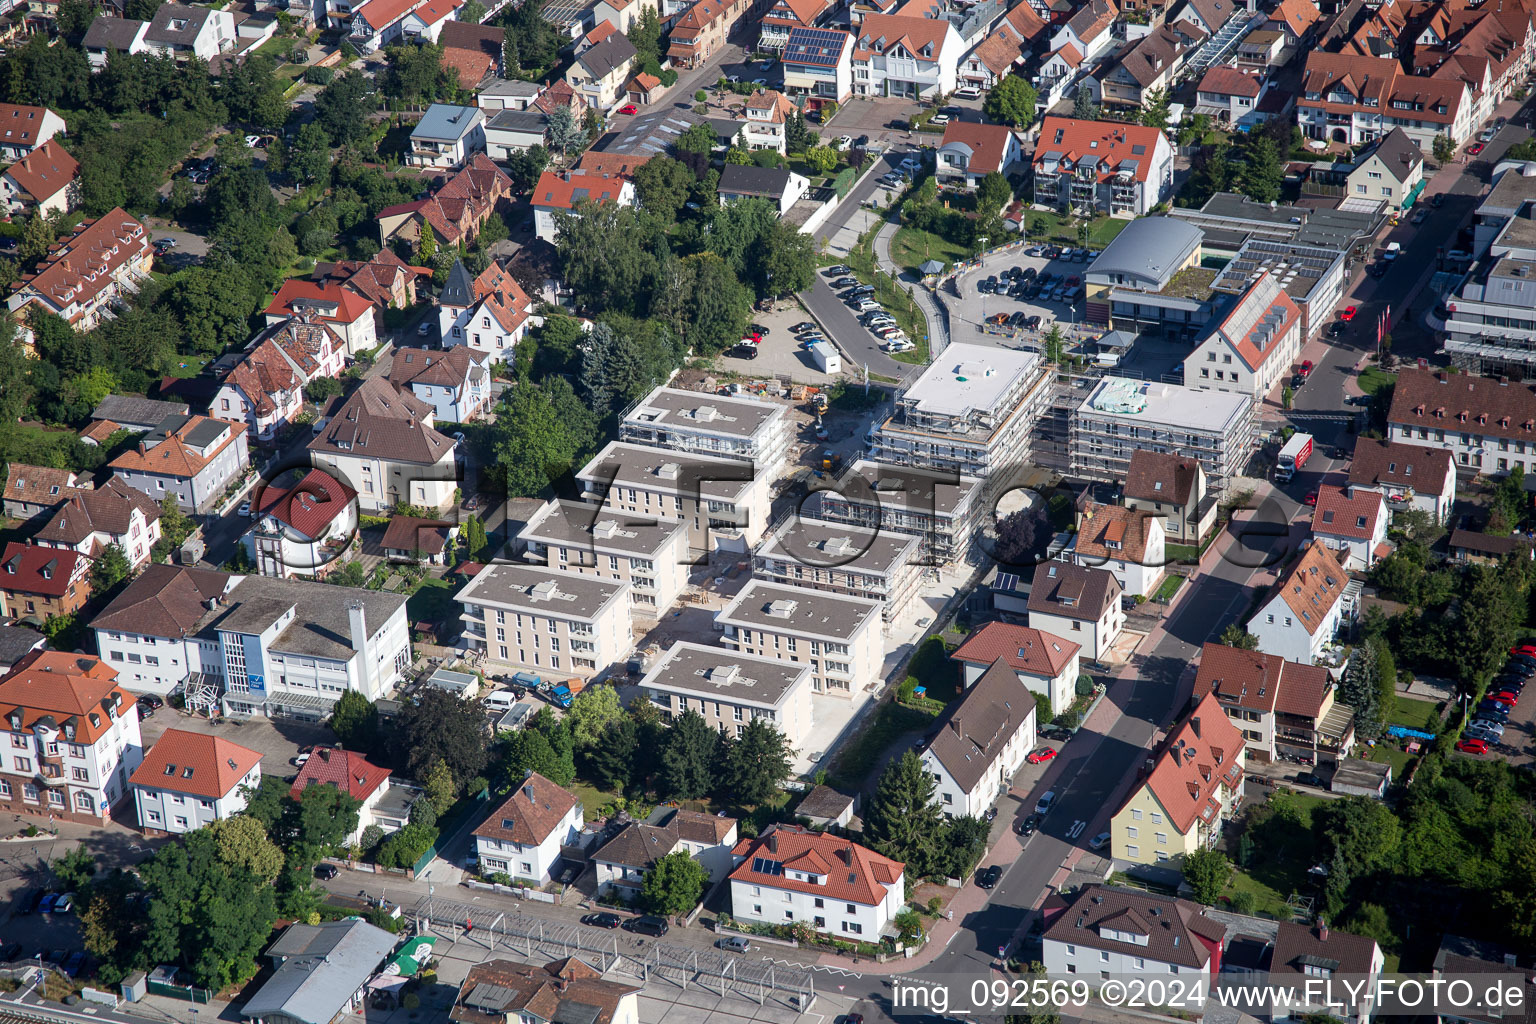 Gebäude- Ensemble- Baustellen zum Neubau eines Stadtquartiers 'Im Stadtkern' in Kandel im Bundesland Rheinland-Pfalz, Deutschland aus der Drohnenperspektive